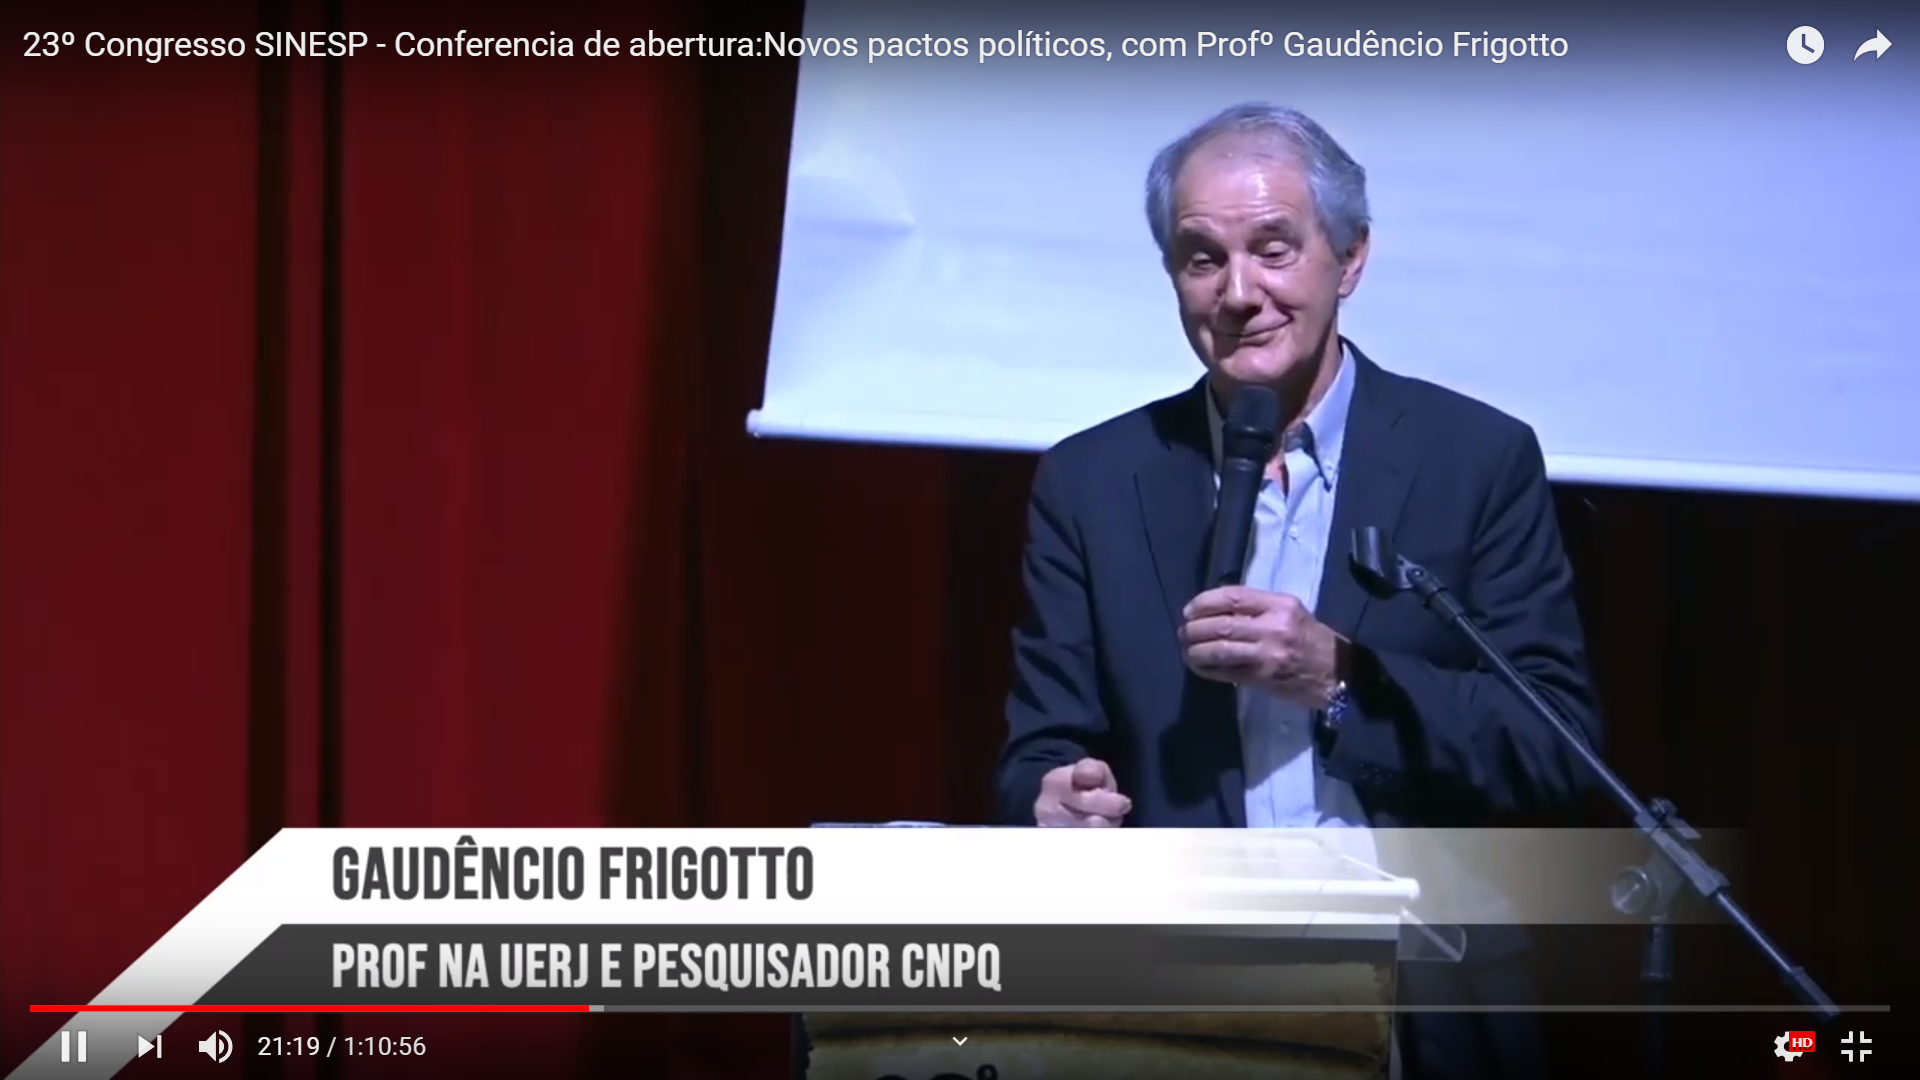 23º Congresso SINESP - Conferencia de abertura:Novos pactos políticos, com Profº Gaudêncio Frigotto